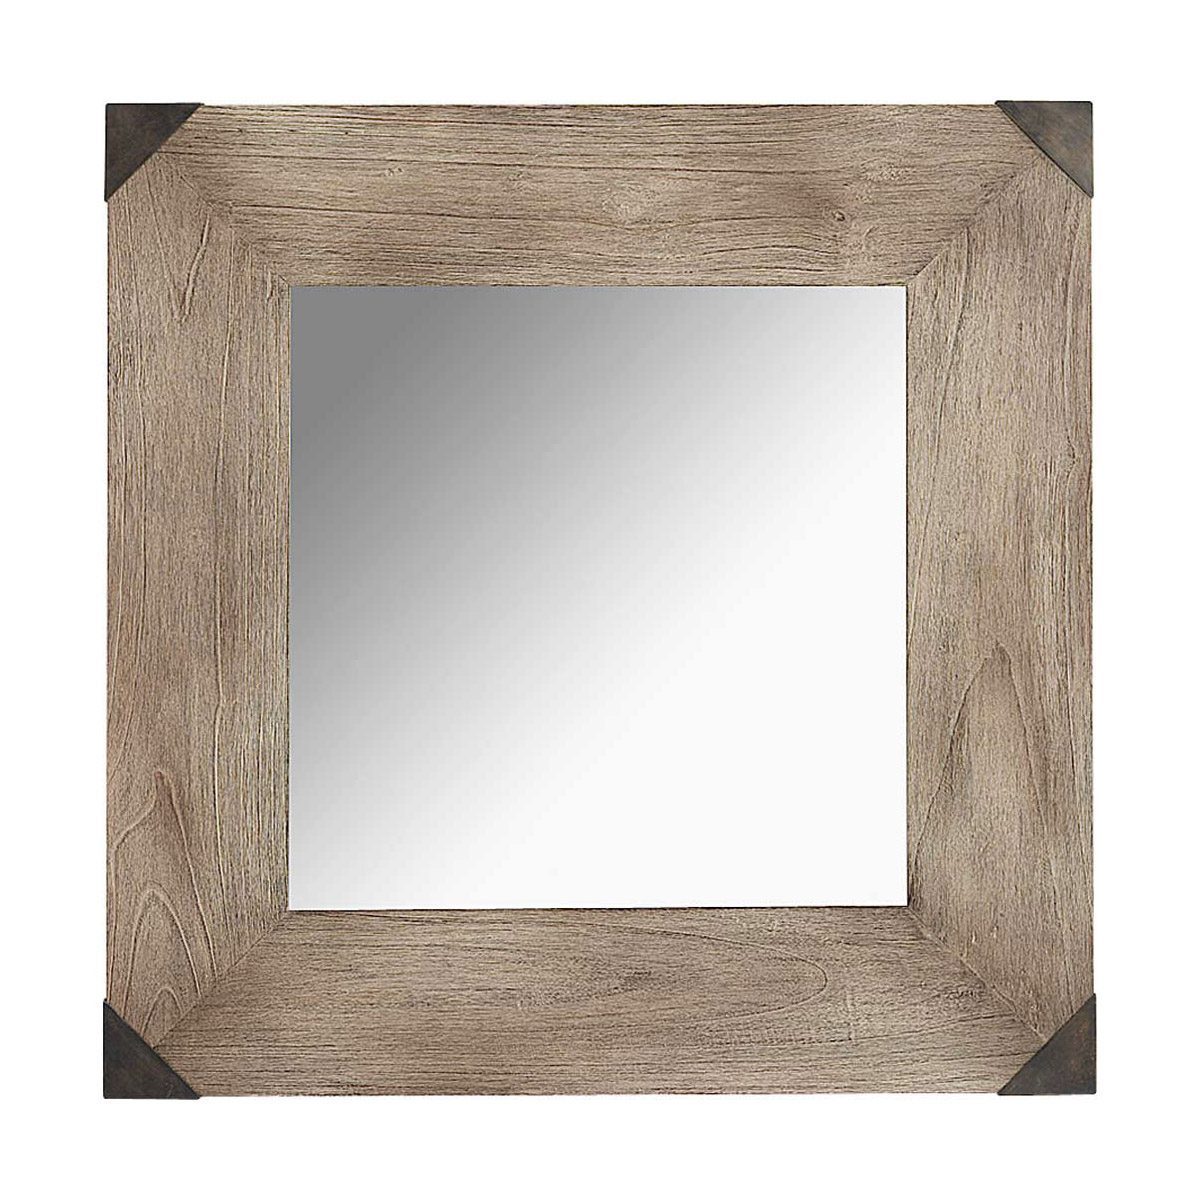 Vintage spegel i kvadratiskt format från Artwood.